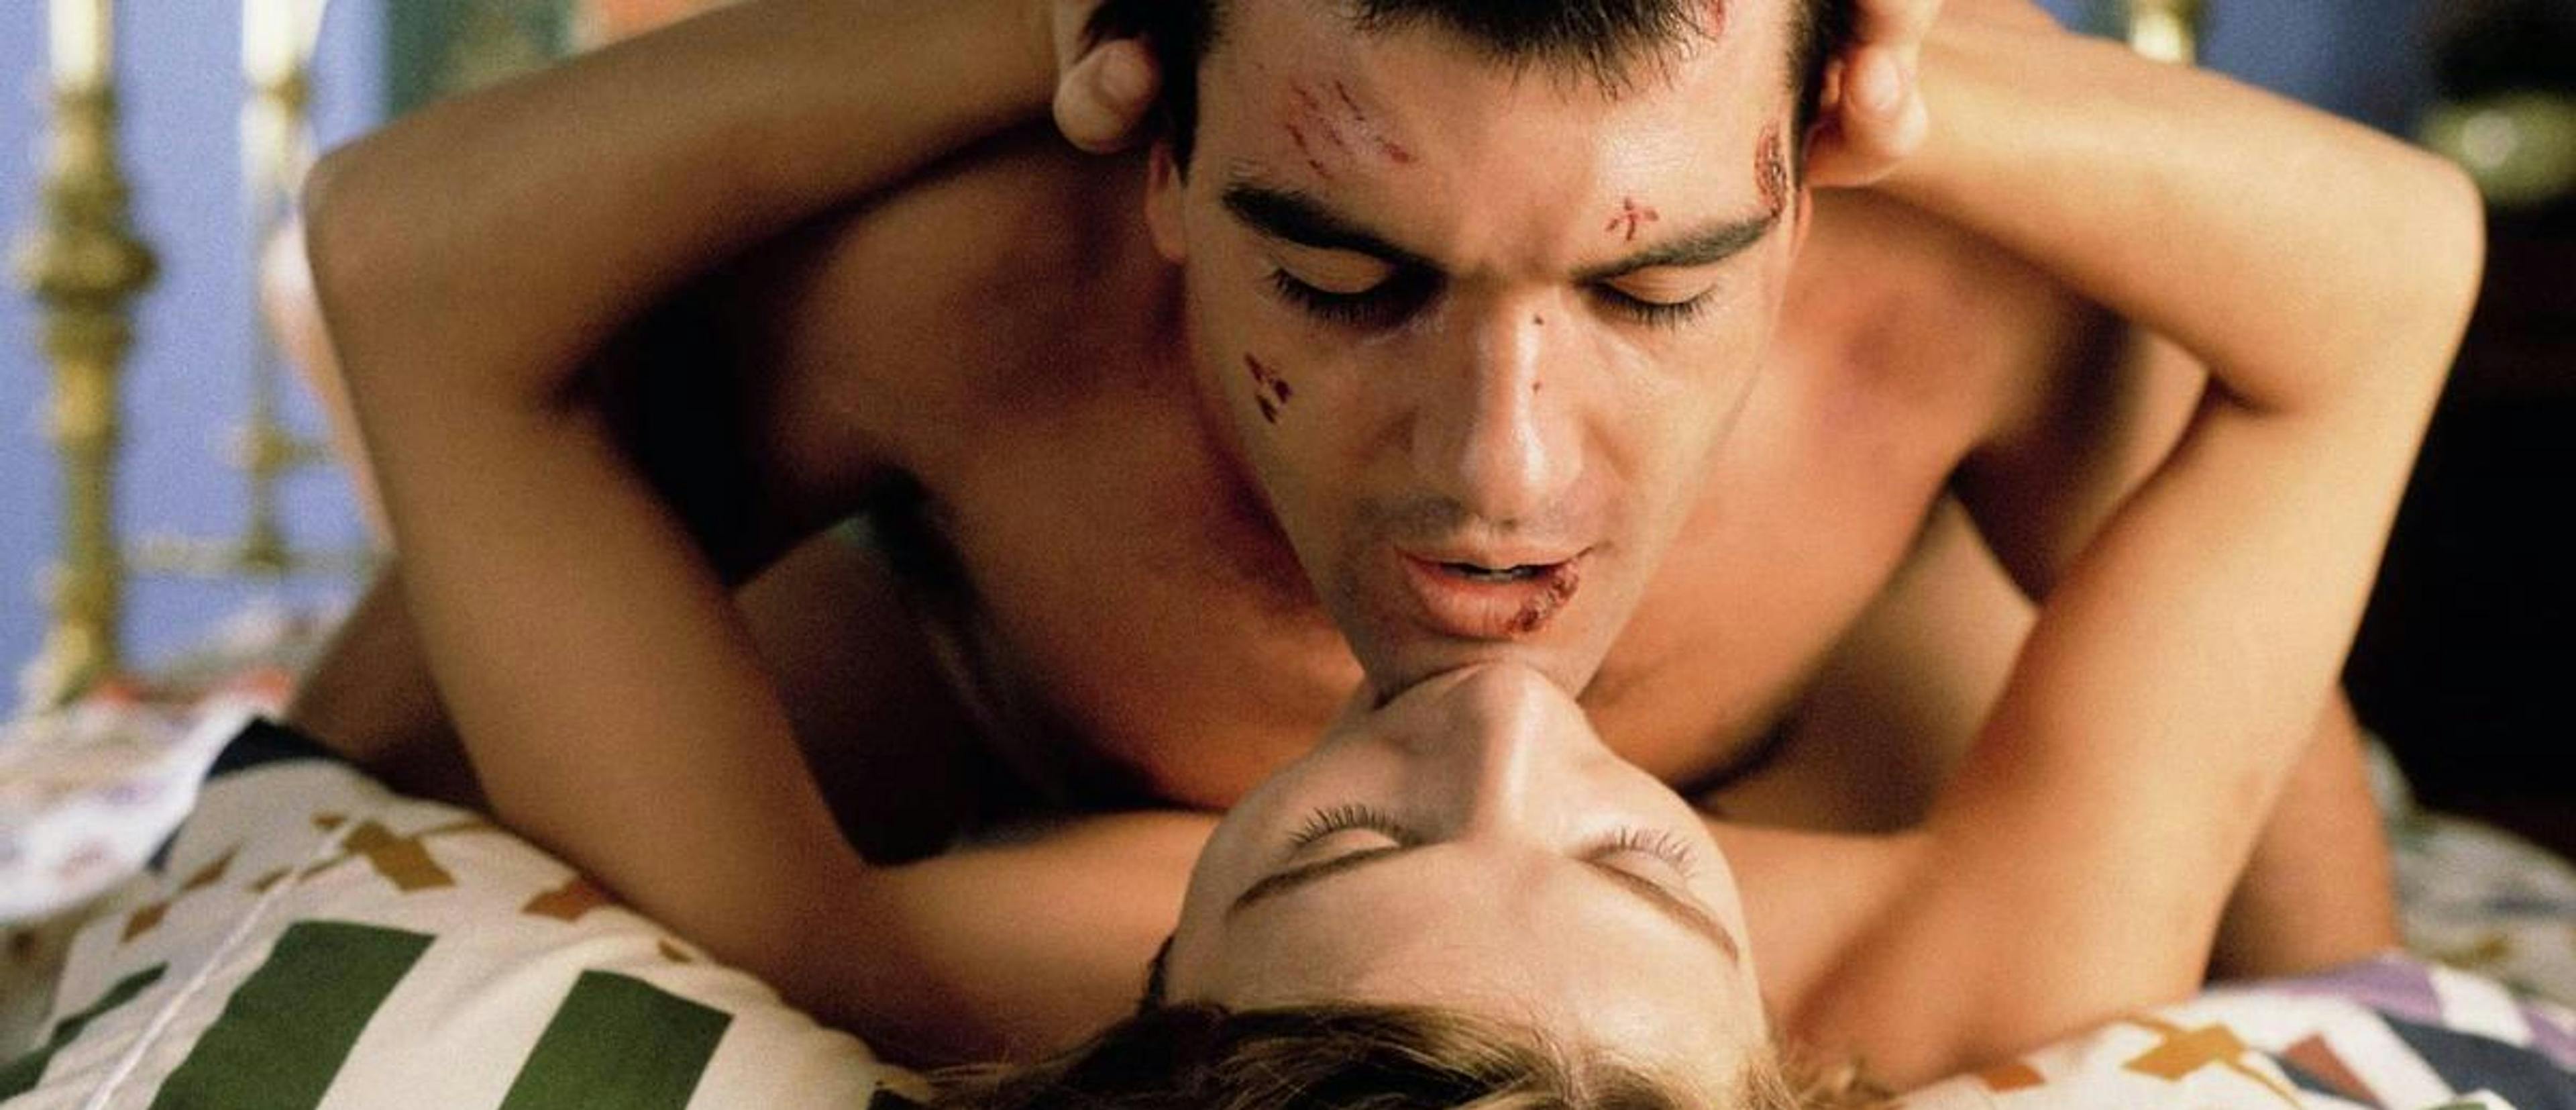 Antonio Banderas y Victoria Abril en una escena de cama de '¡Átame!'